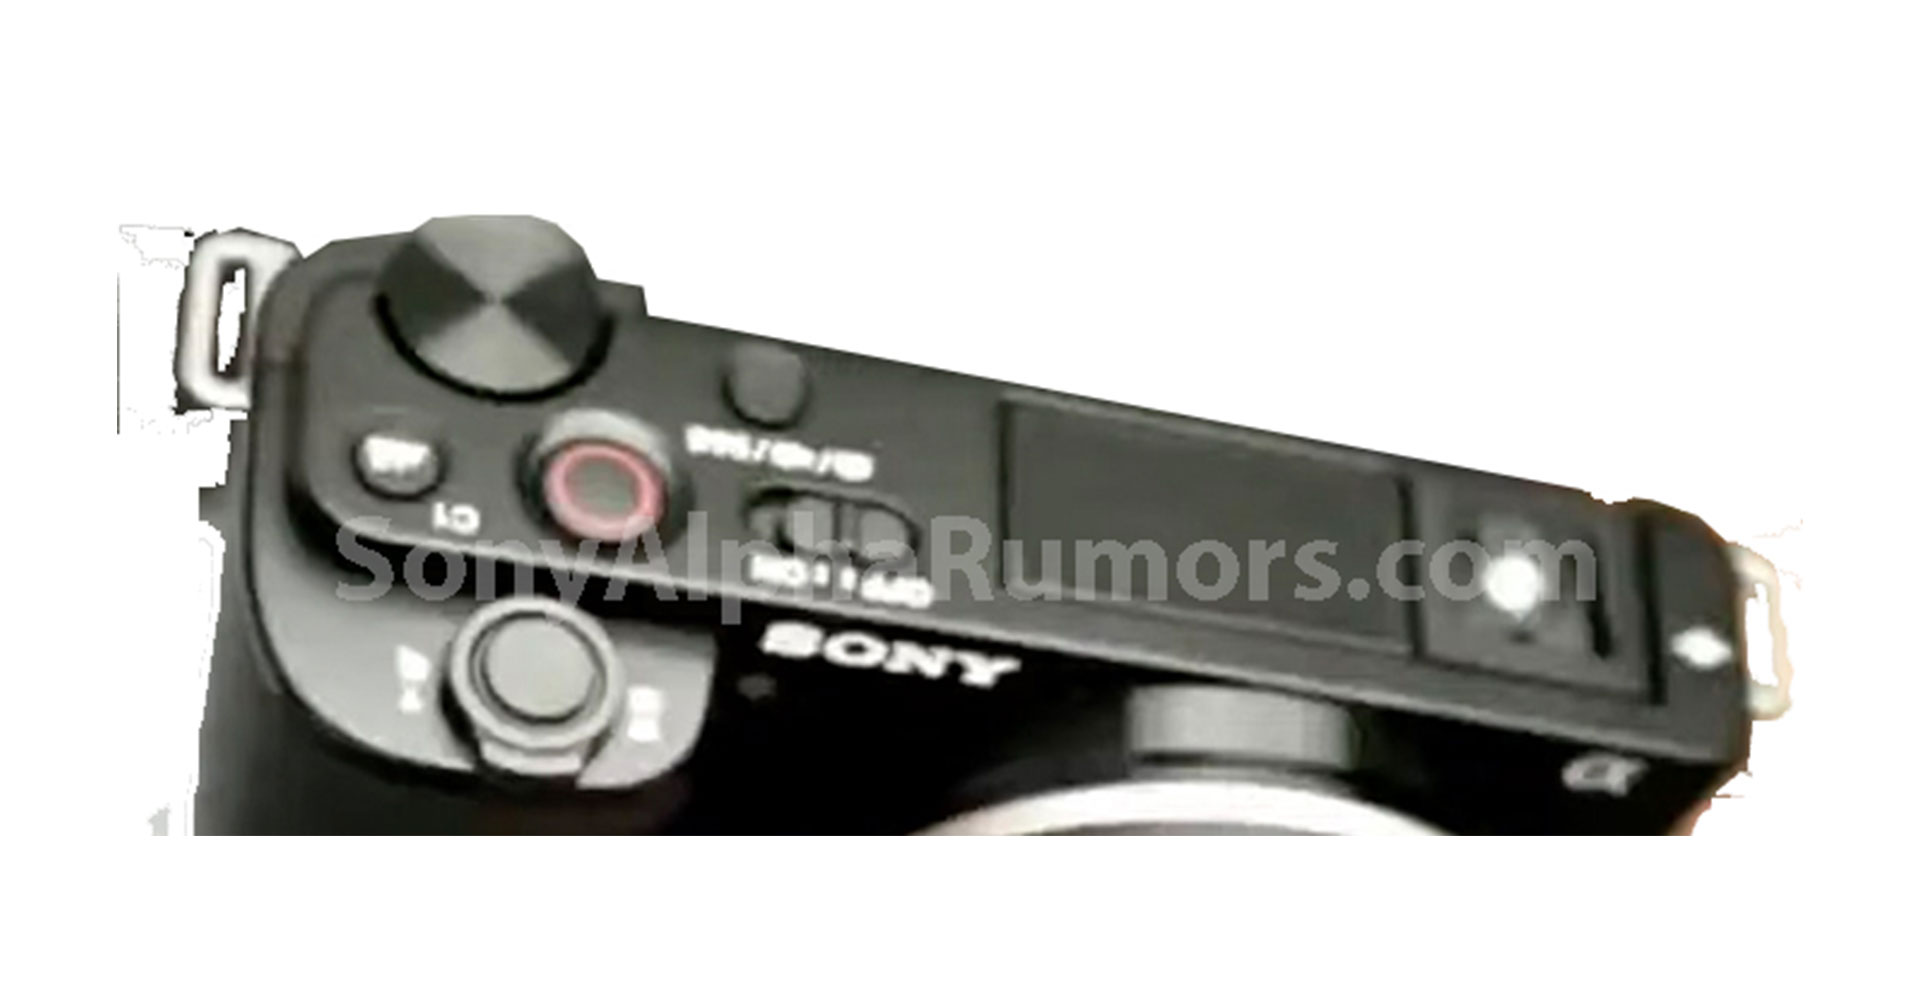 หลุดภาพแรก Sony ZV-E10 ก่อนเปิดตัว 7 ก.ค. นี้